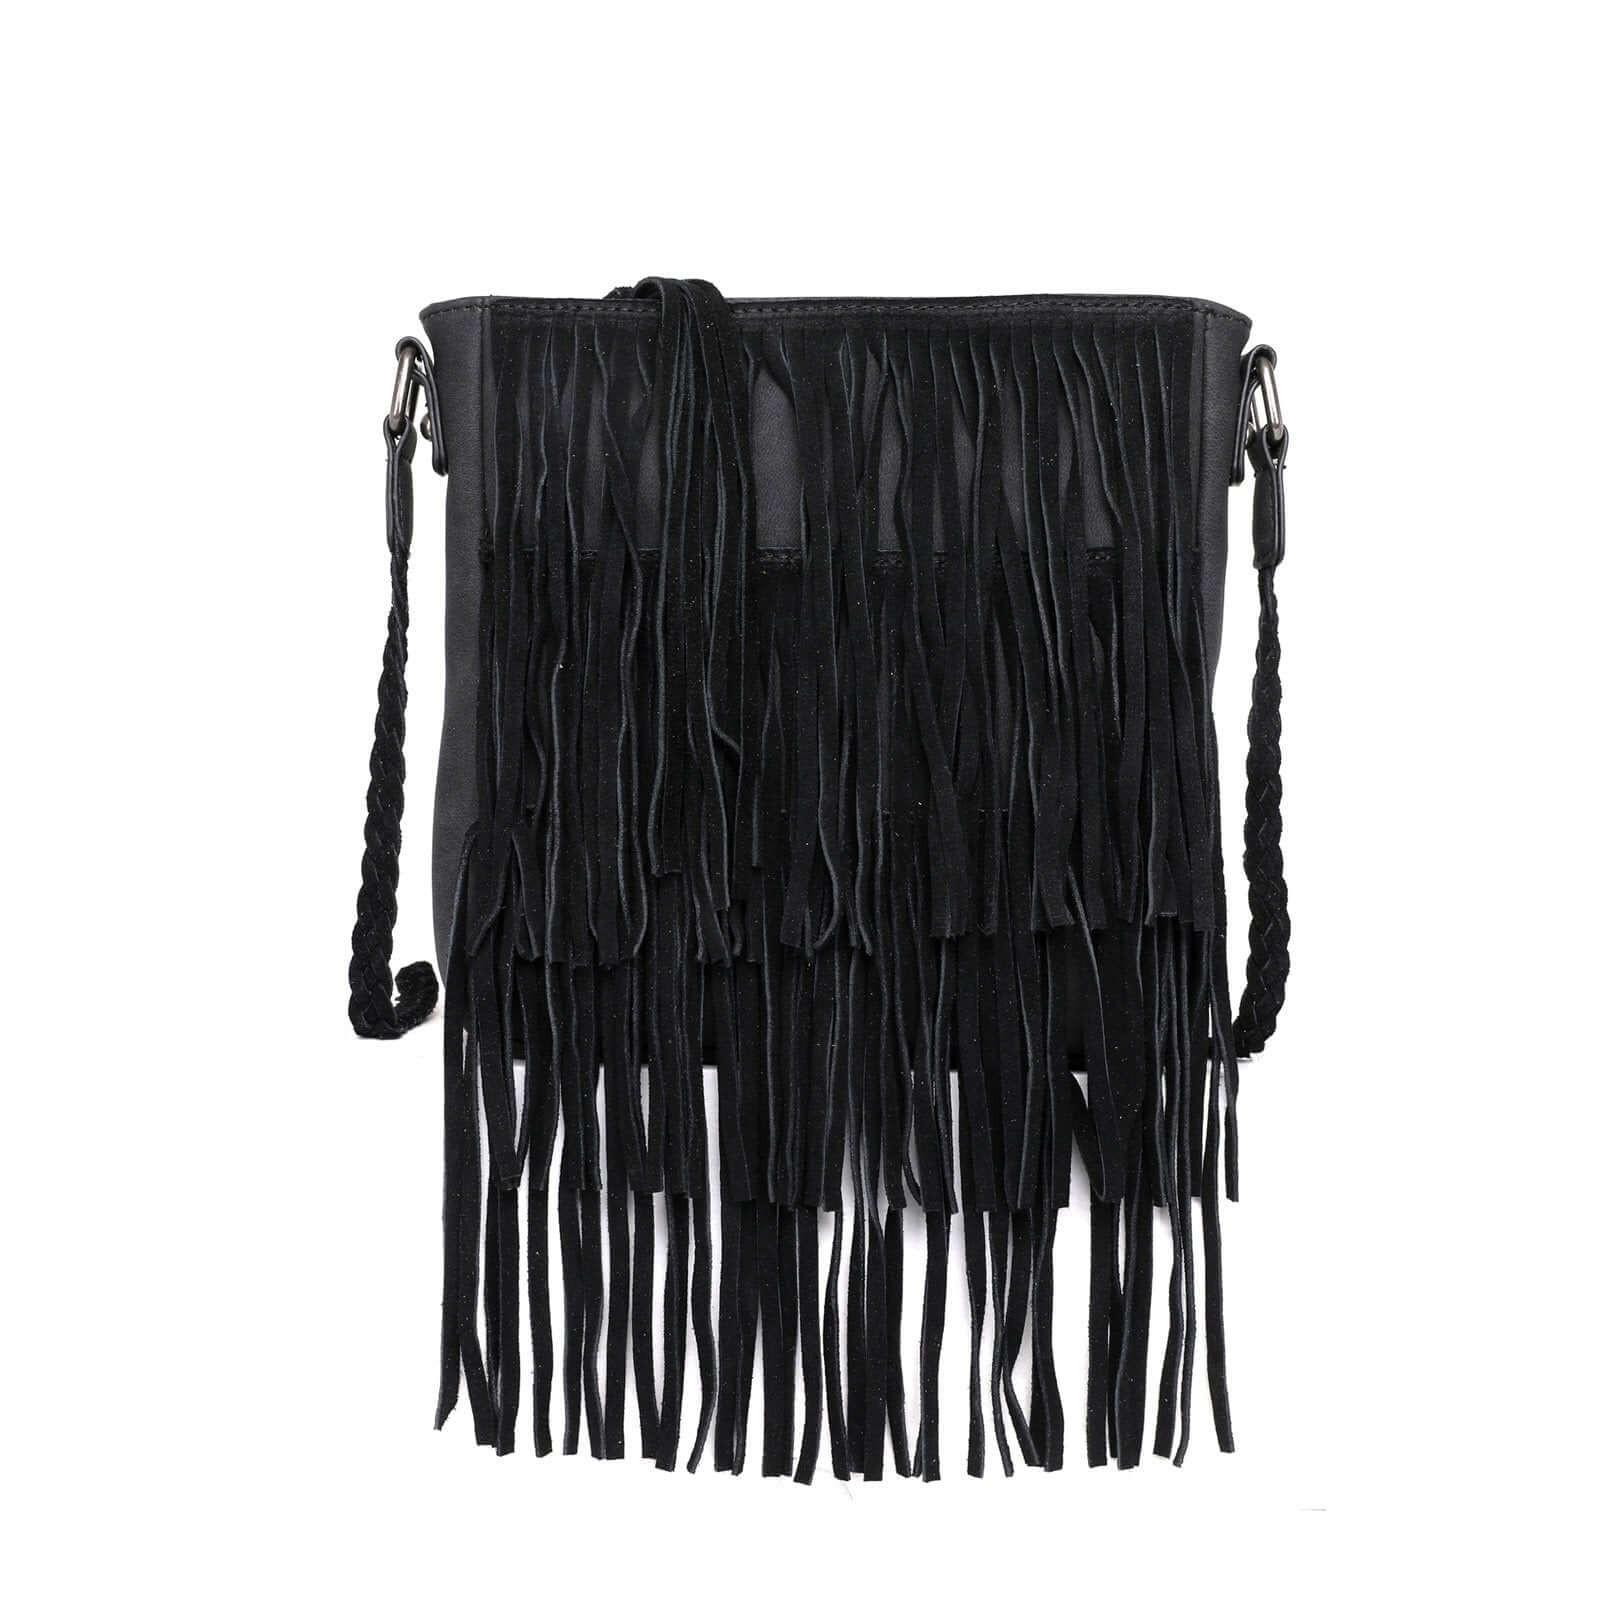 WG11-8360 BK- Wrangler leather fringe crossbody bag- Black